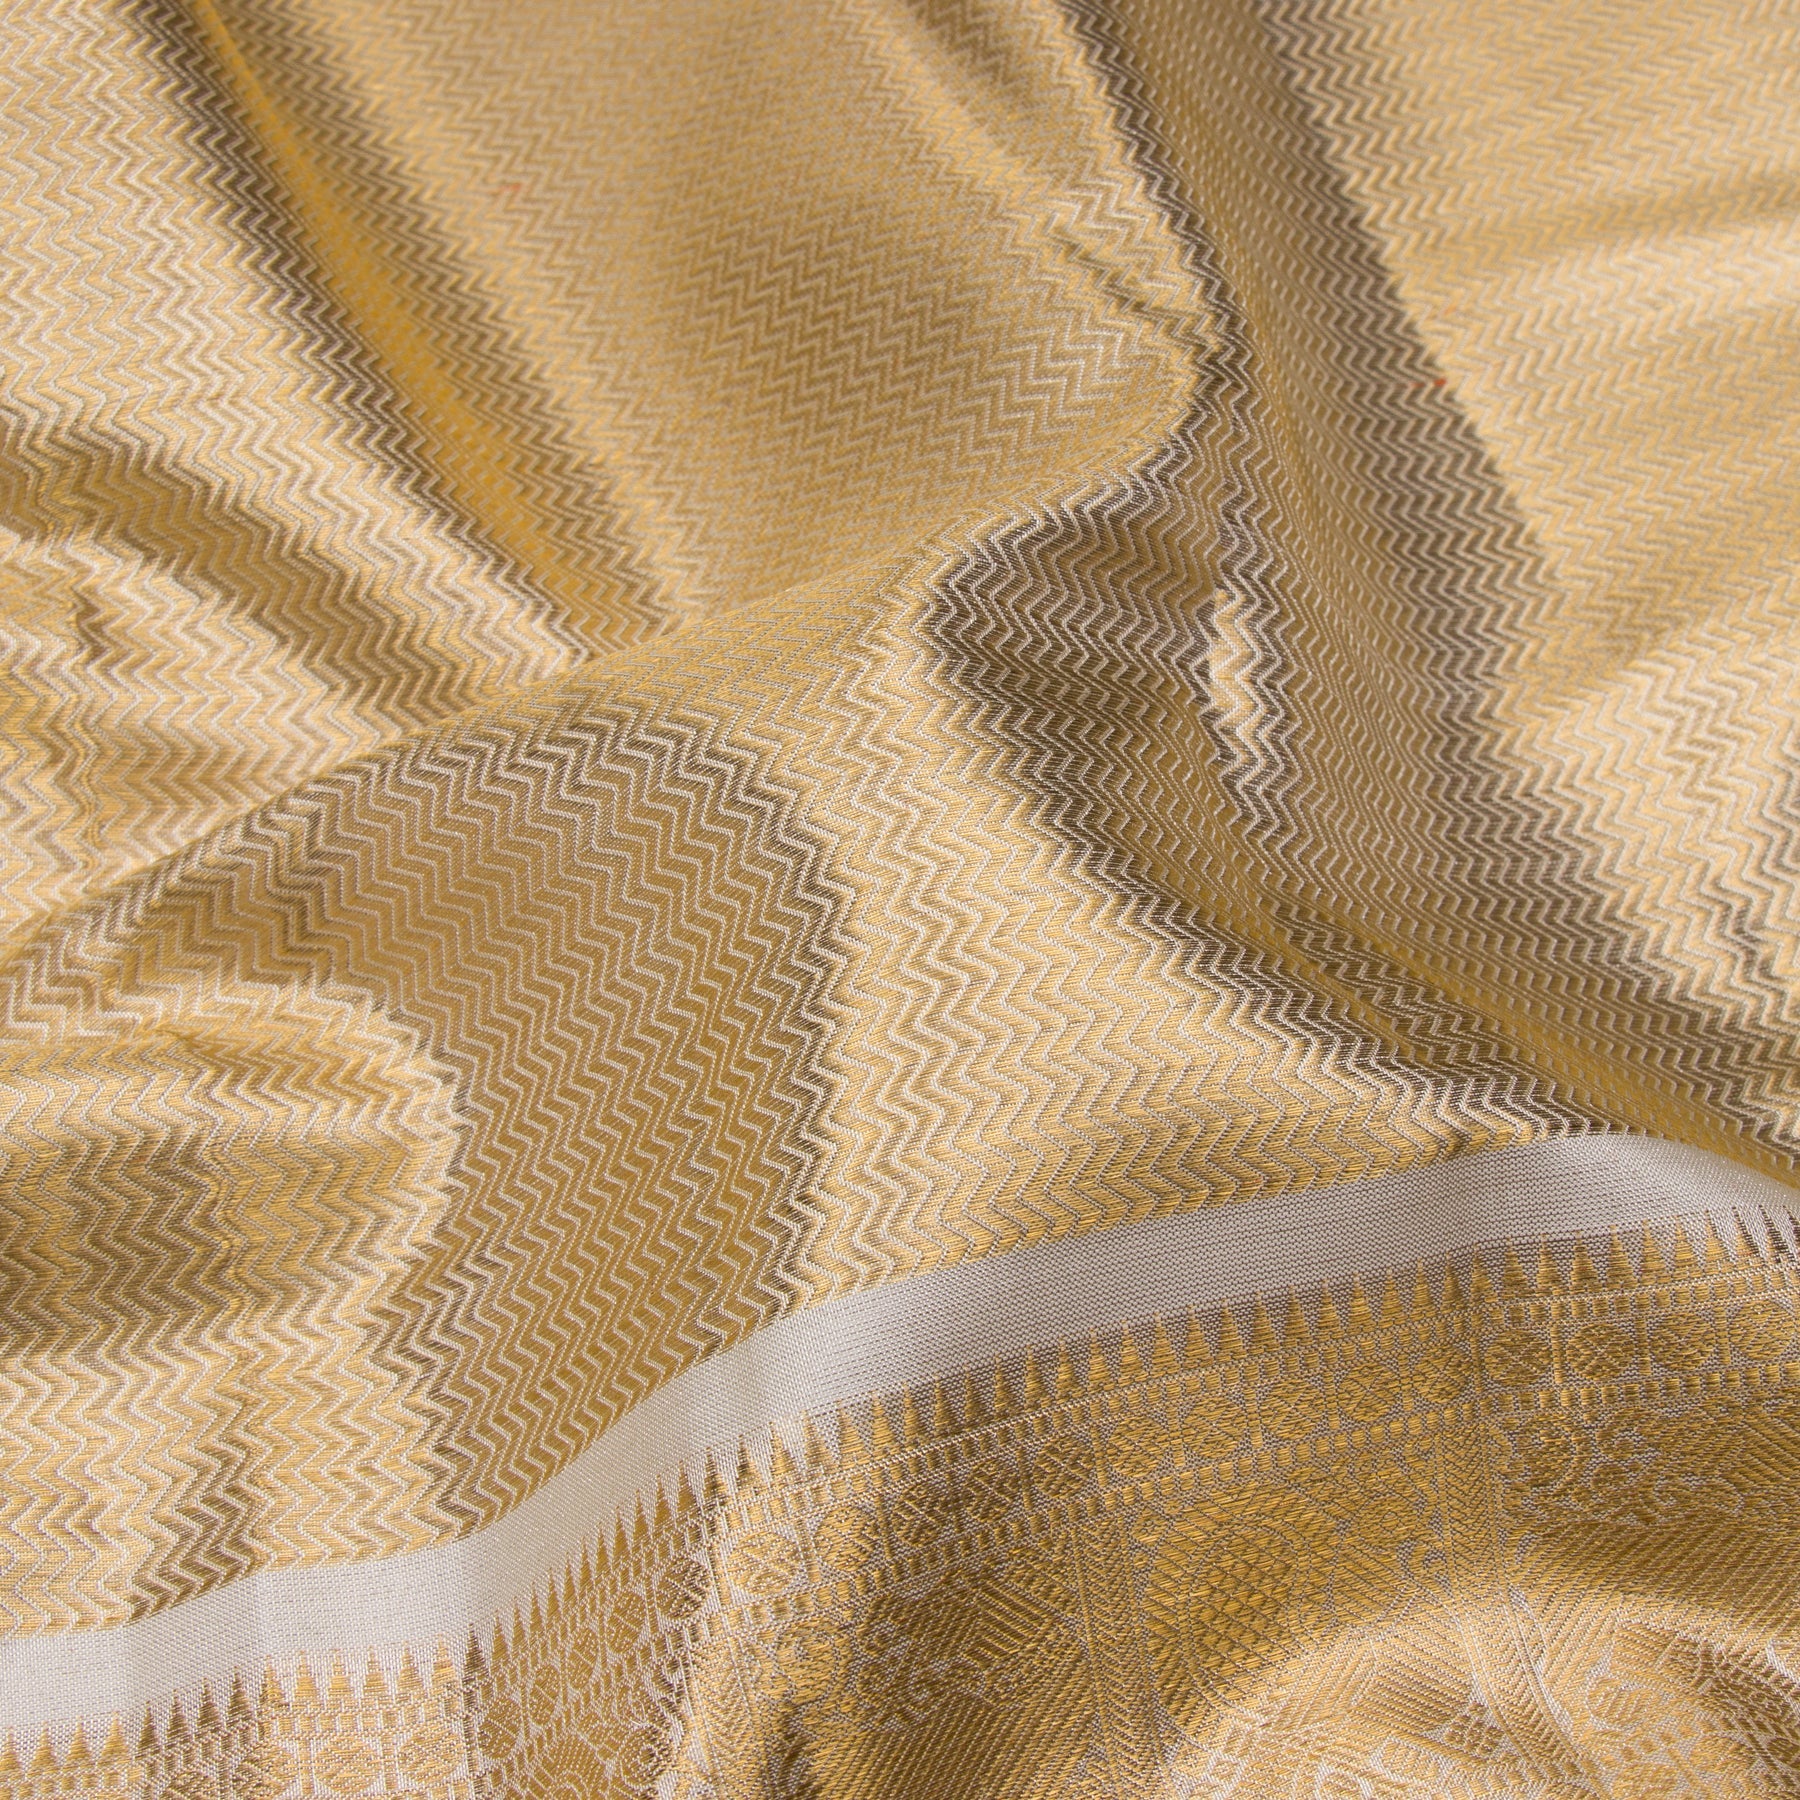 Kanakavalli Kanjivaram Silk Sari 23-110-HS001-09989 - Fabric View